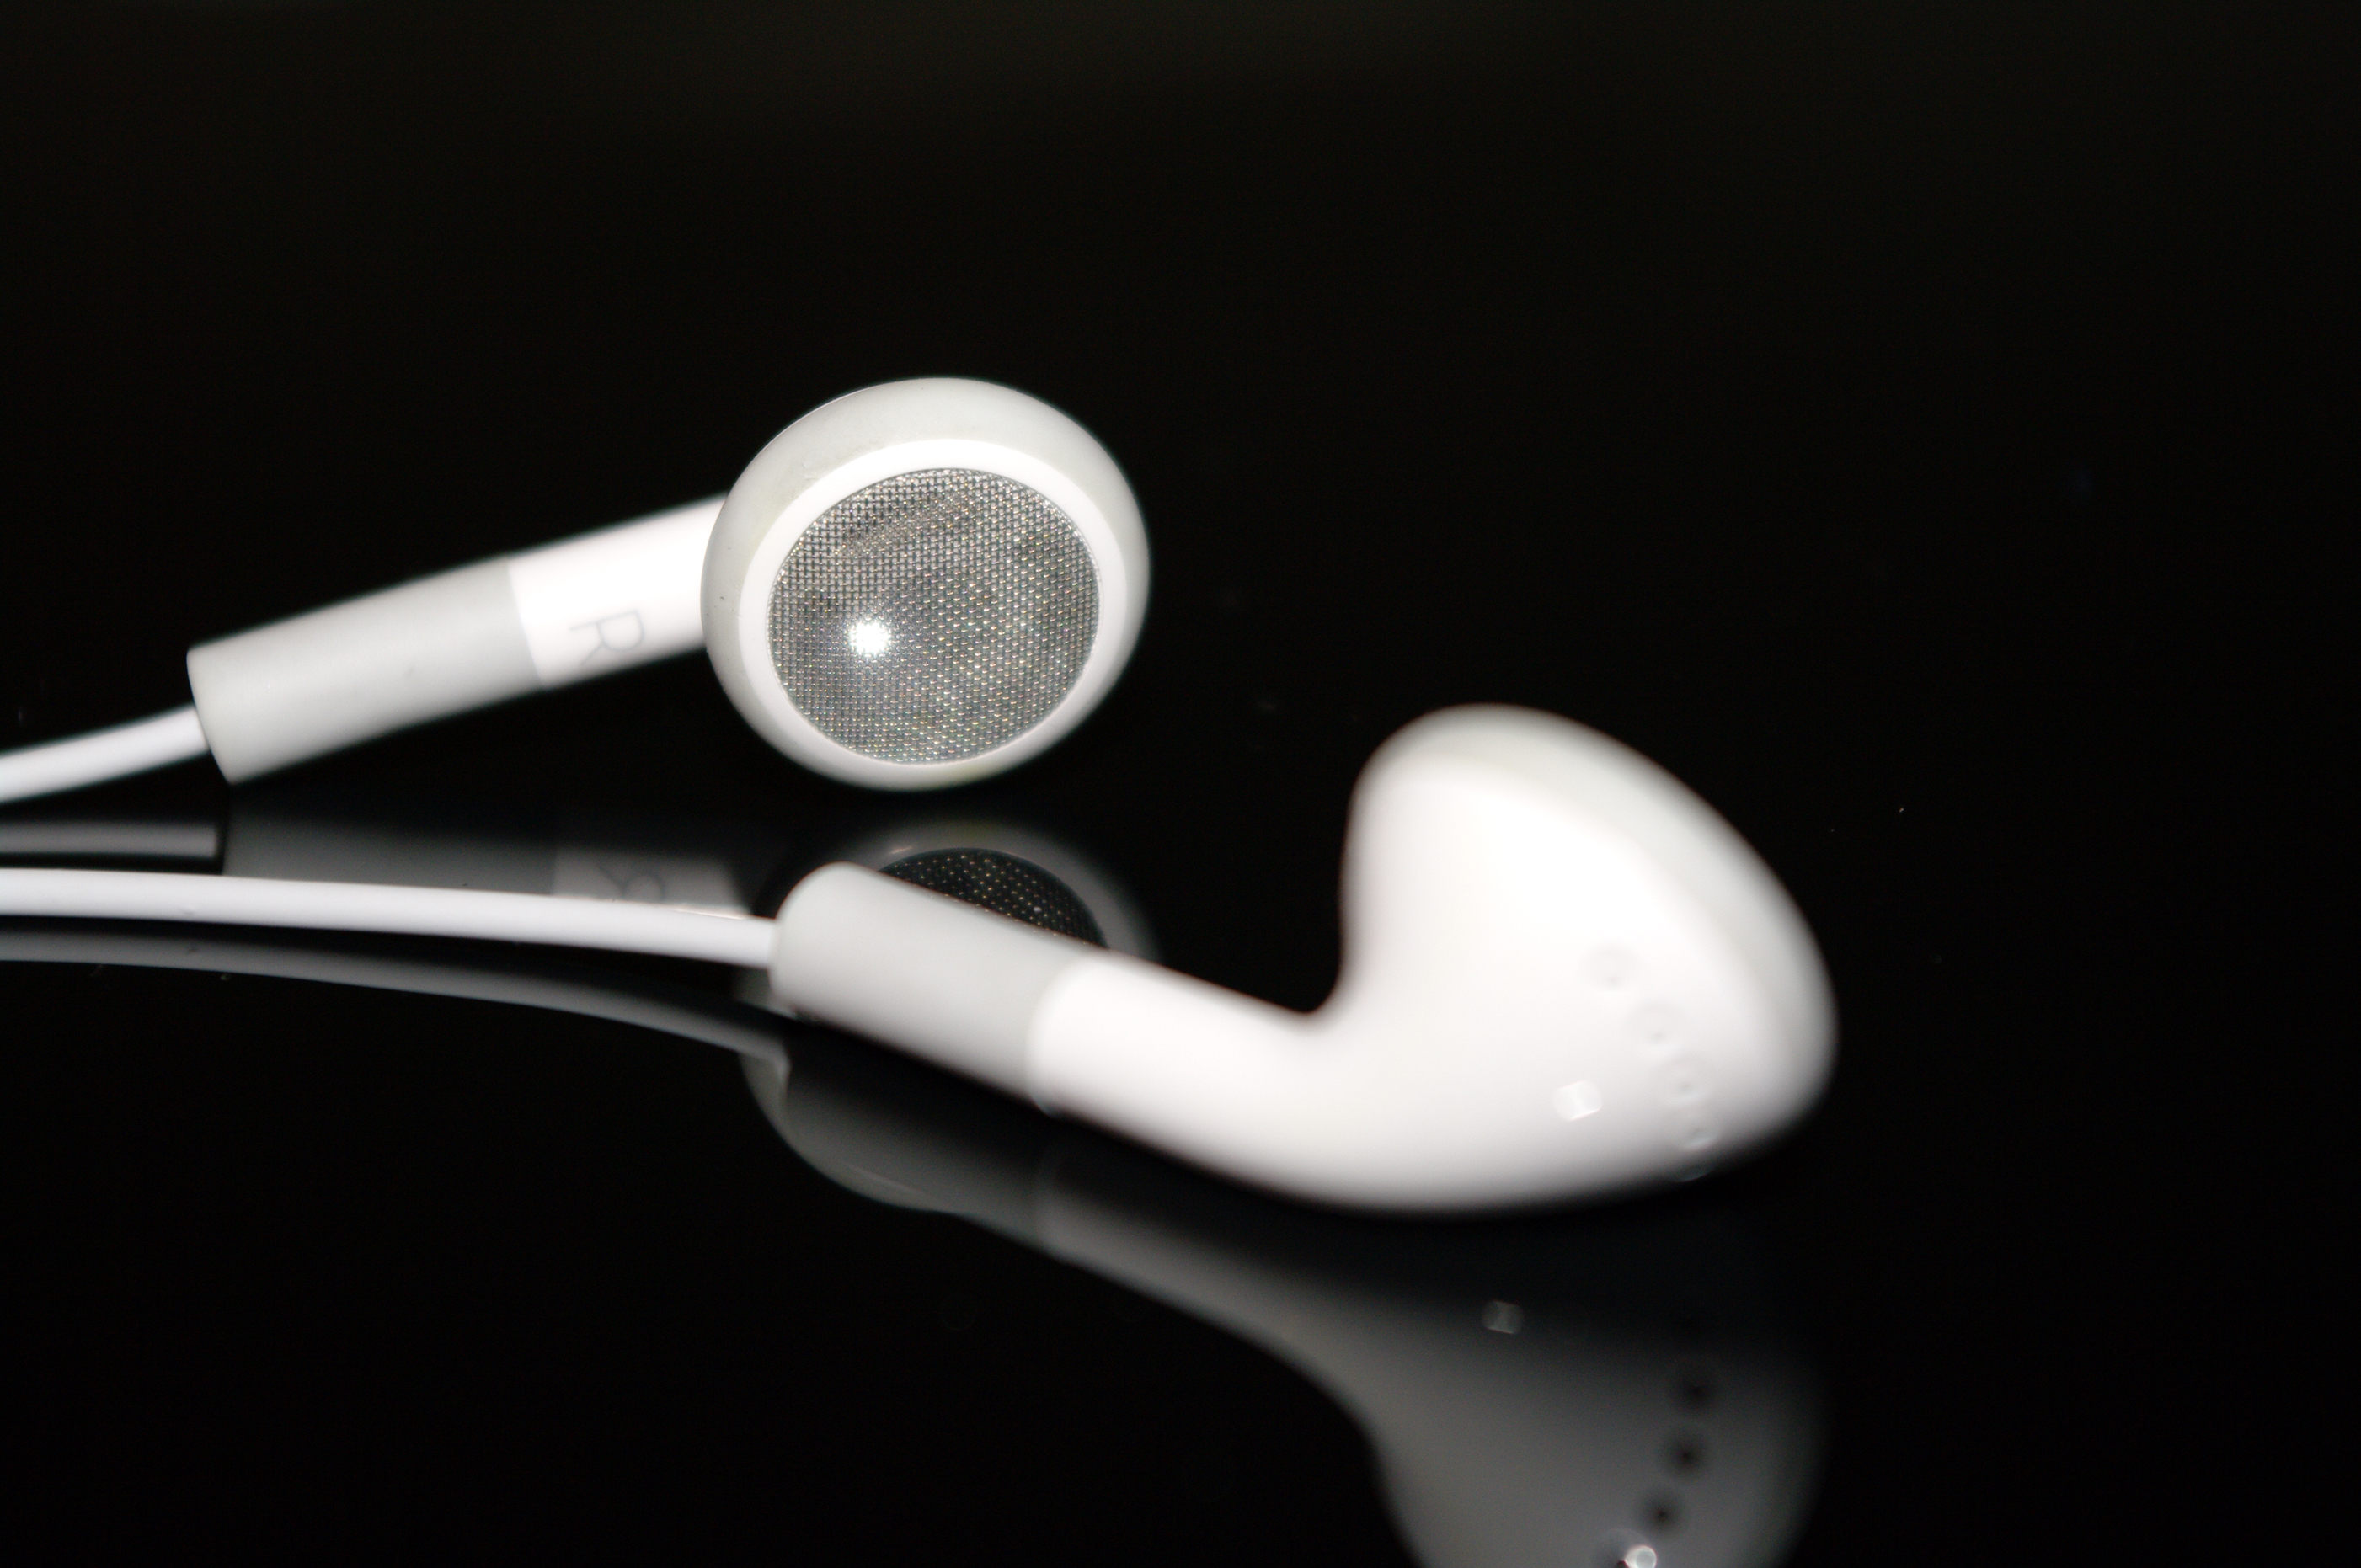 Ipod earphones photo